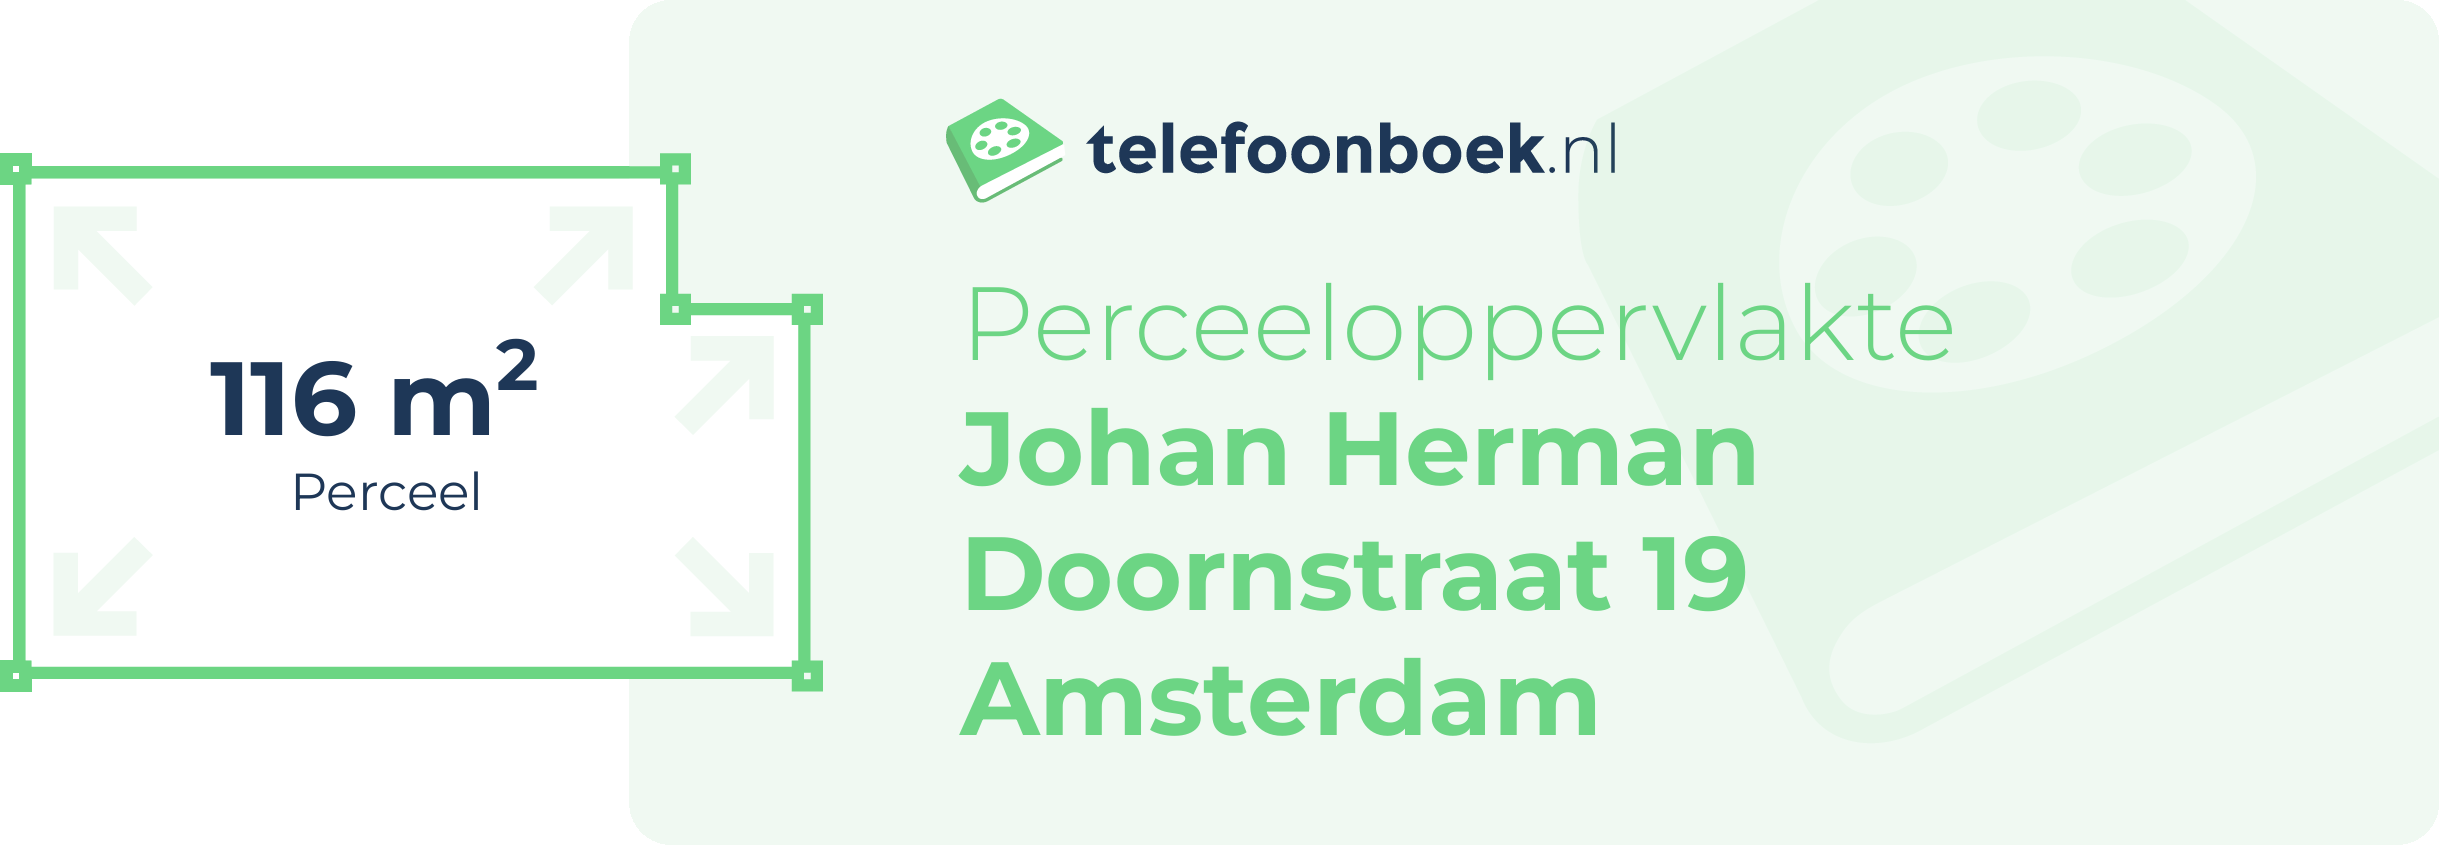 Perceeloppervlakte Johan Herman Doornstraat 19 Amsterdam